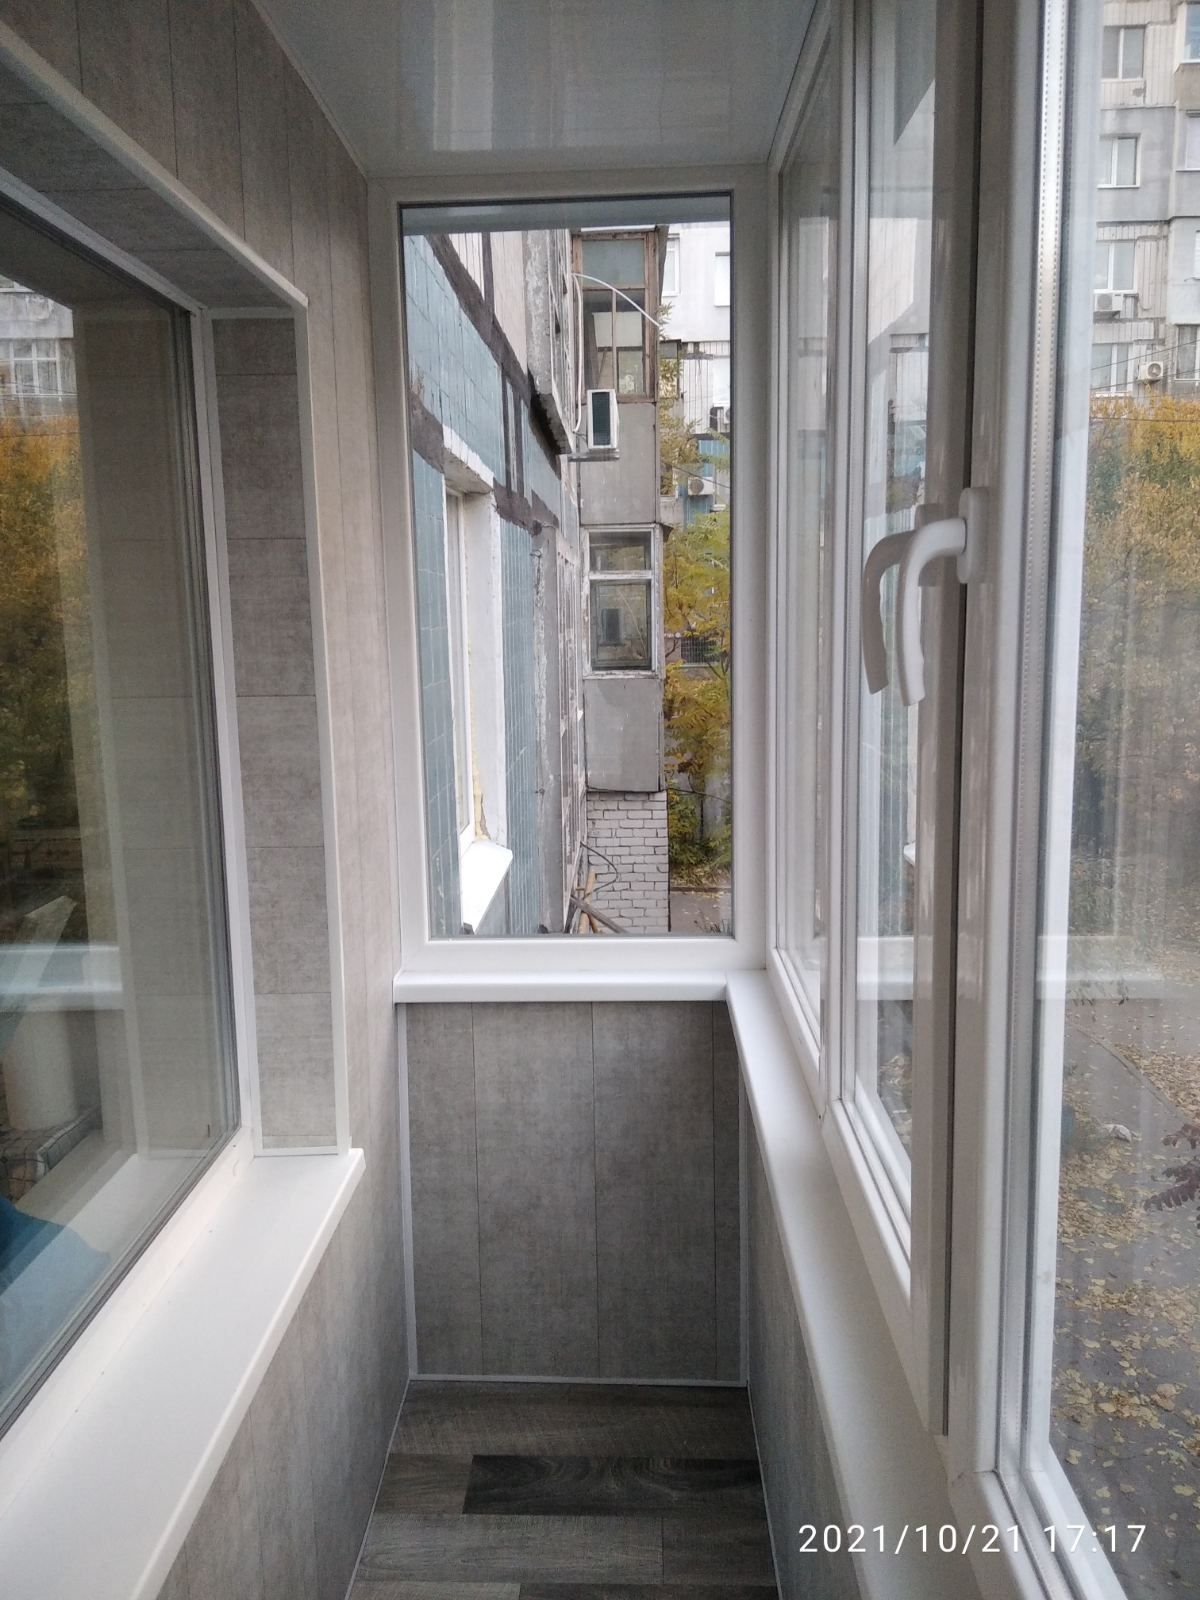 Окна, Балконы под ключ,сезонные скидки-15%, расширяем балконы ВДВОЕ!!!